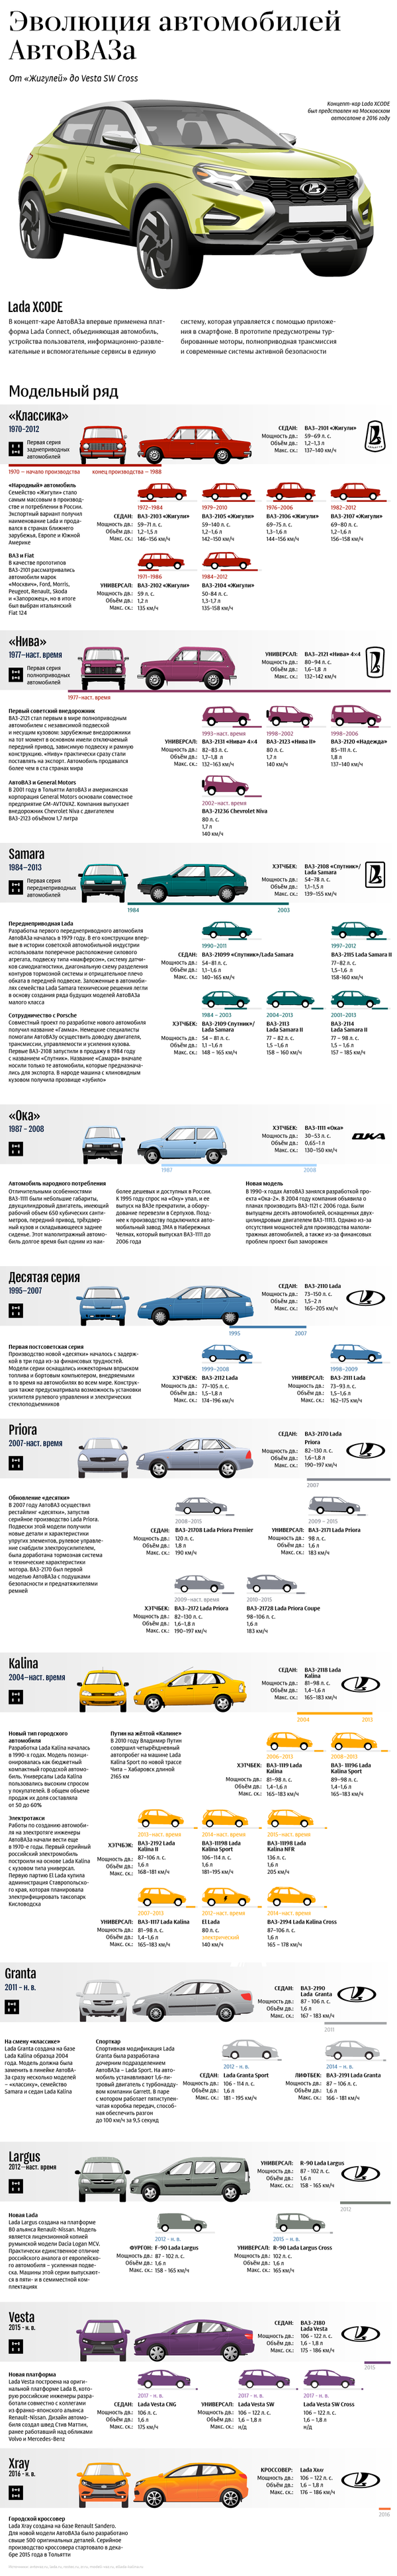 Эволюция автомобилей АвтоВАЗа - Sputnik Армения